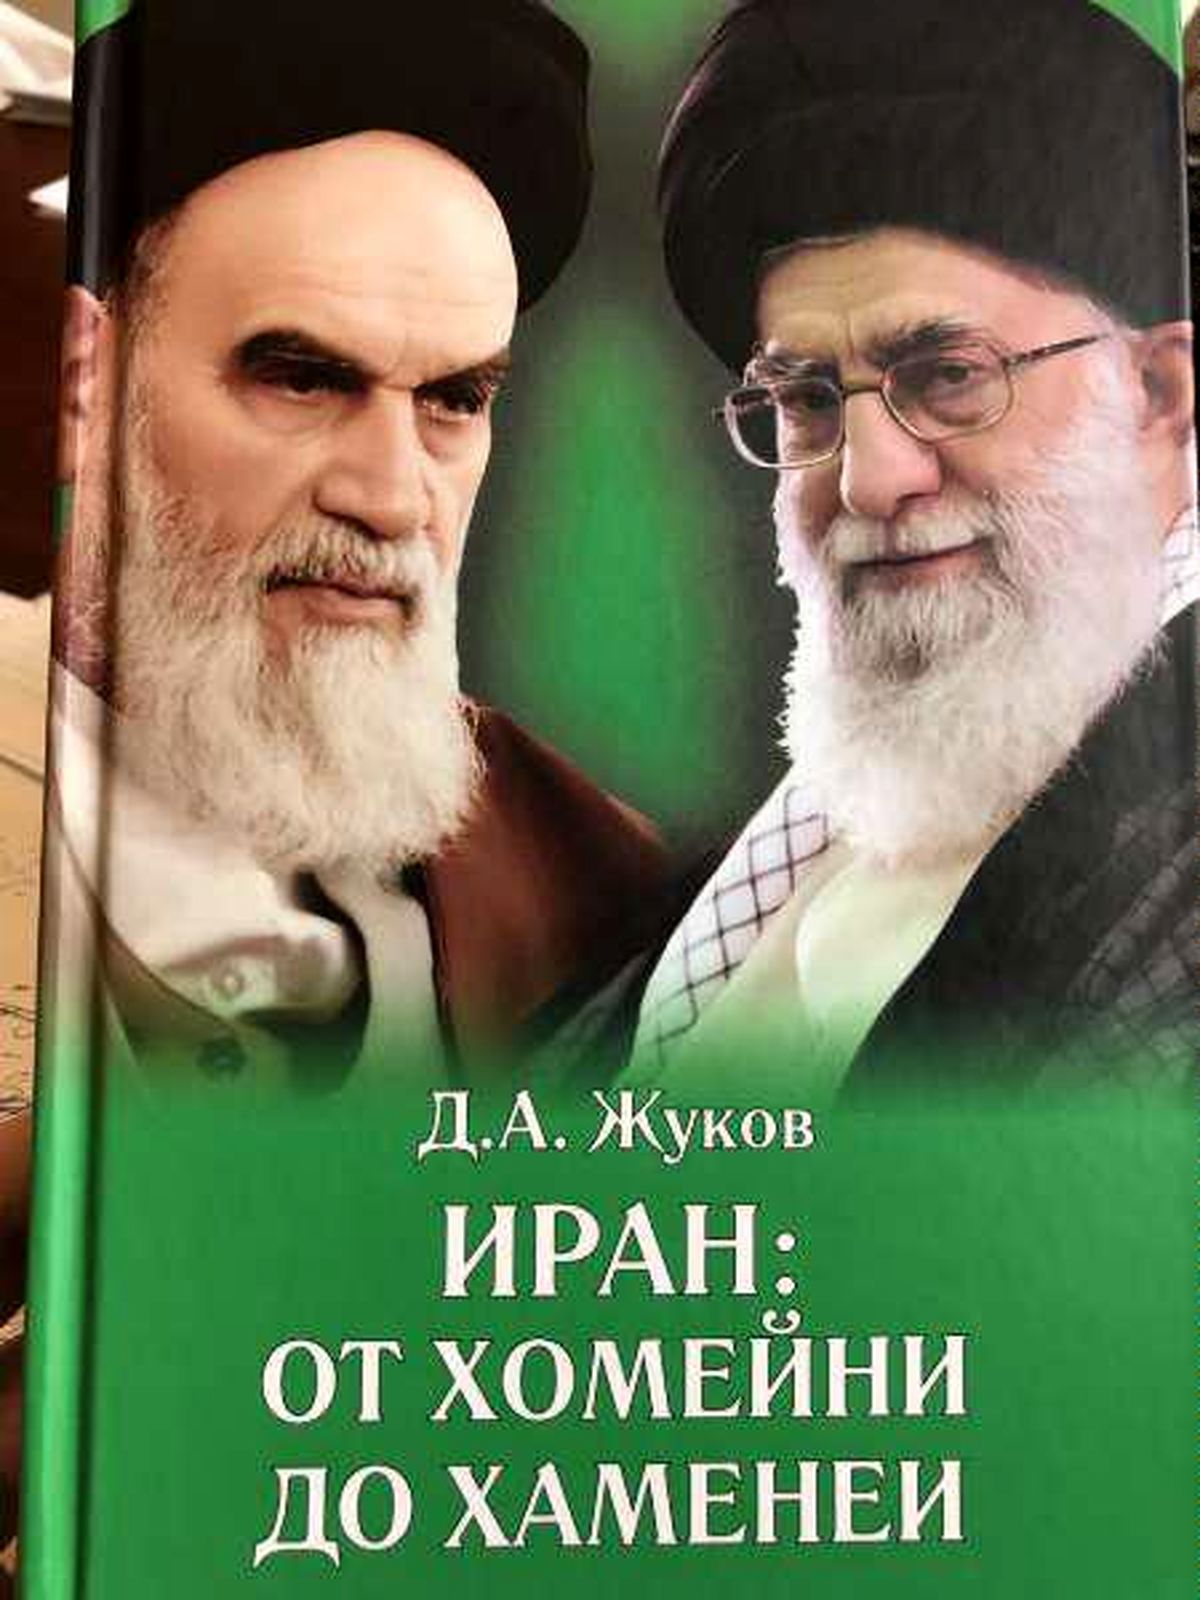 چاپ سوم کتاب از "خمینی تا خامنه‌ای" در روسیه